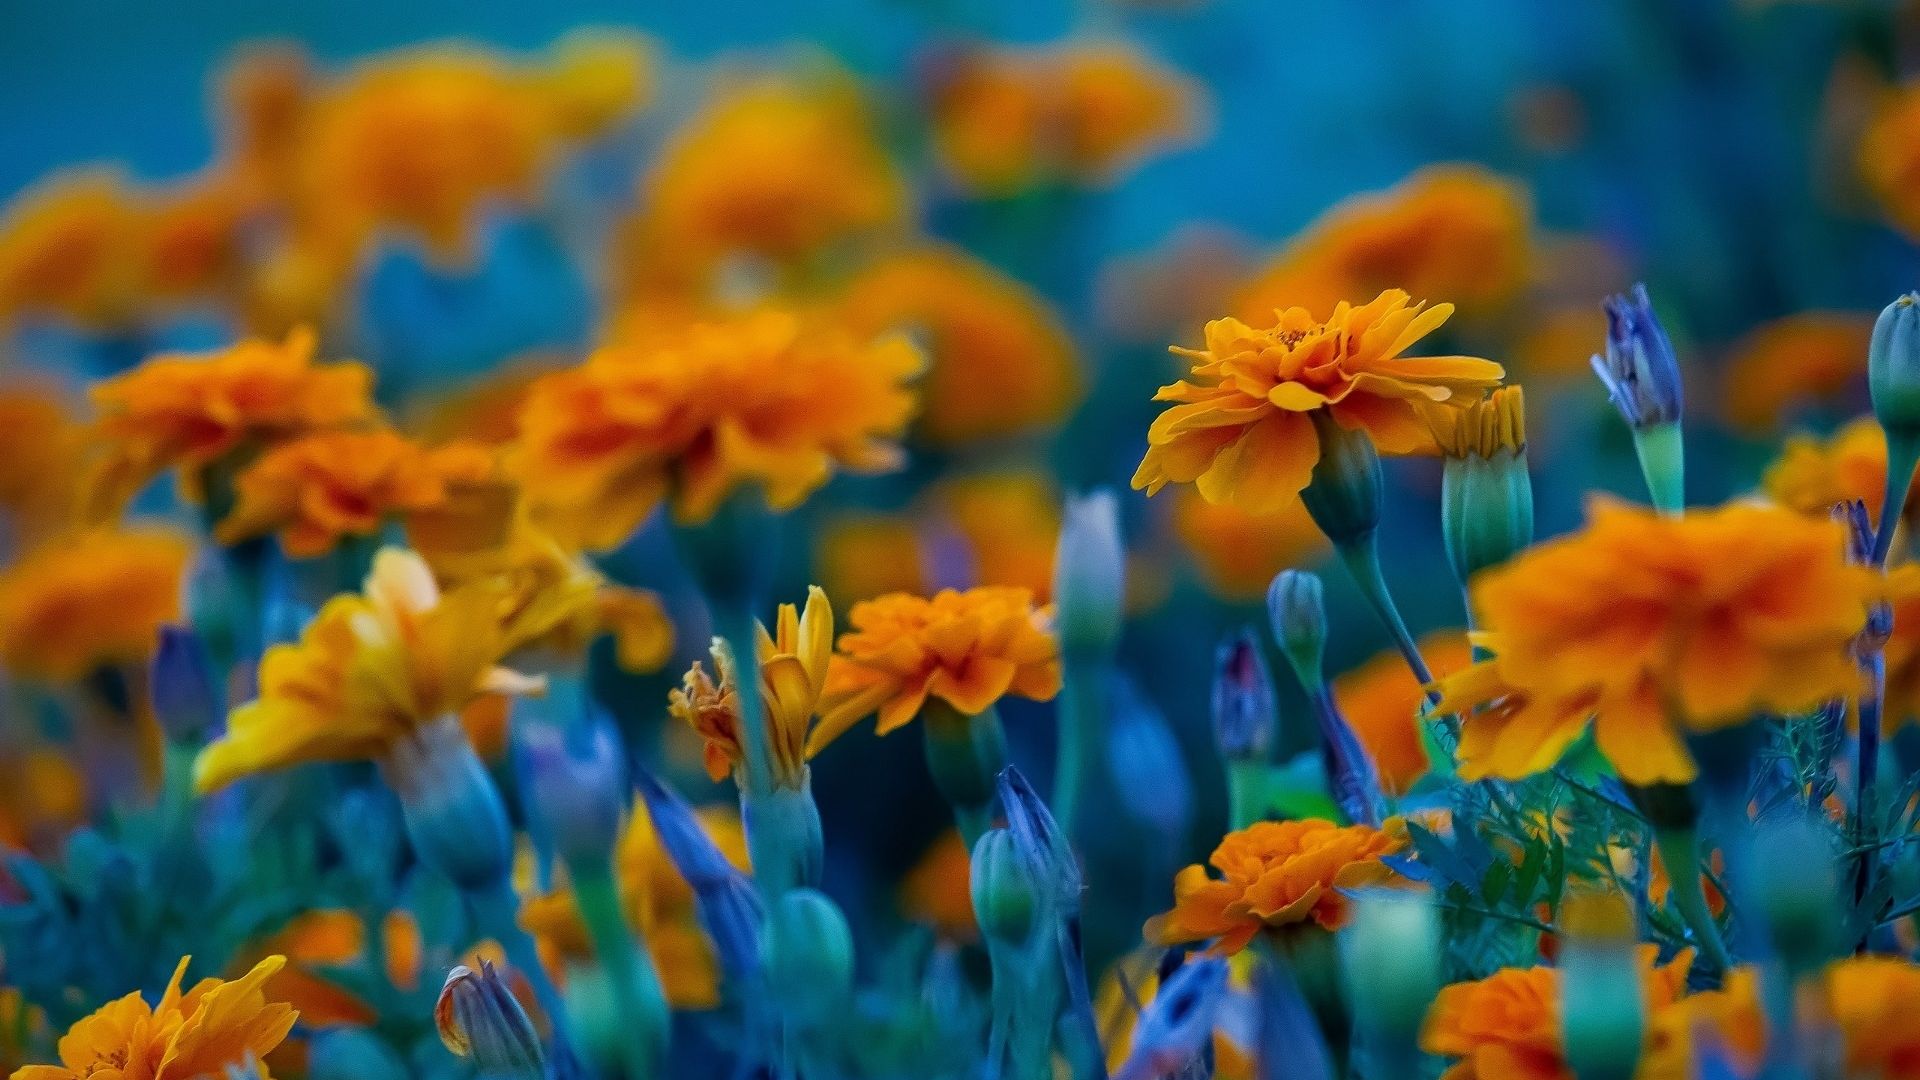 Bạn yêu thích sự tươi trẻ, trẻ trung và sáng tạo? Hình nền máy tính hoa cam với những nụ hoa lung linh và rực rỡ sẽ đem đến cho bạn một trải nghiệm tuyệt vời. Tự tin, năng động và sáng tạo với hình ảnh đầy màu sắc này.